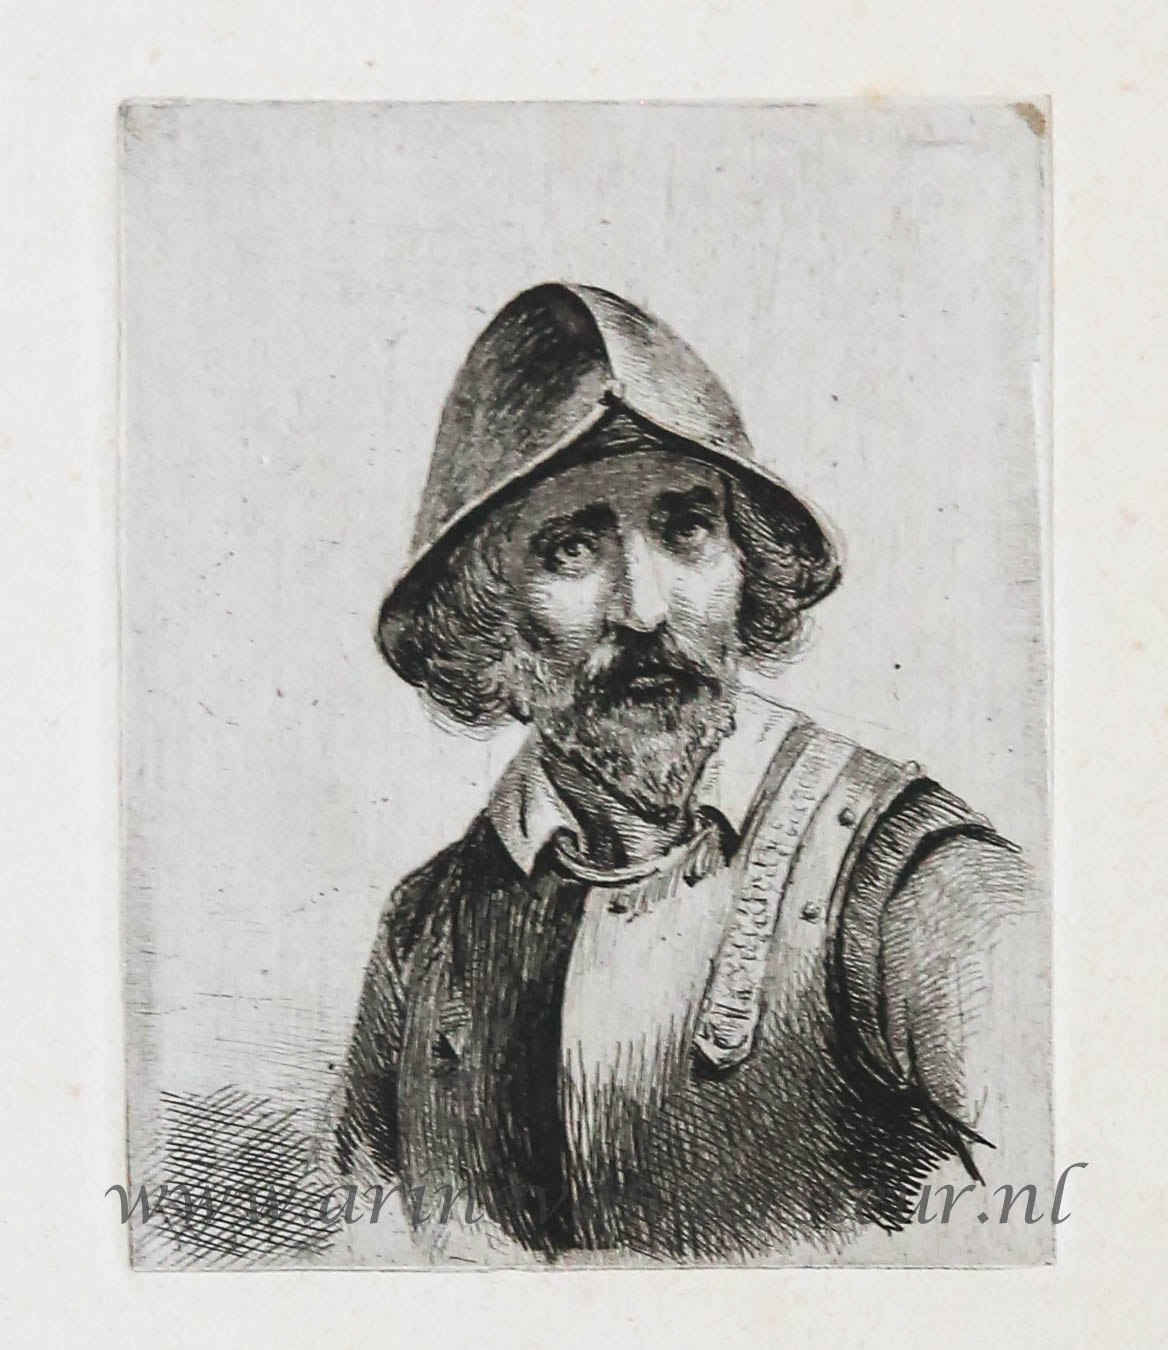 [Antique print, etching] Study of a man with helmet and armor / Studie van man met helm en harnas..